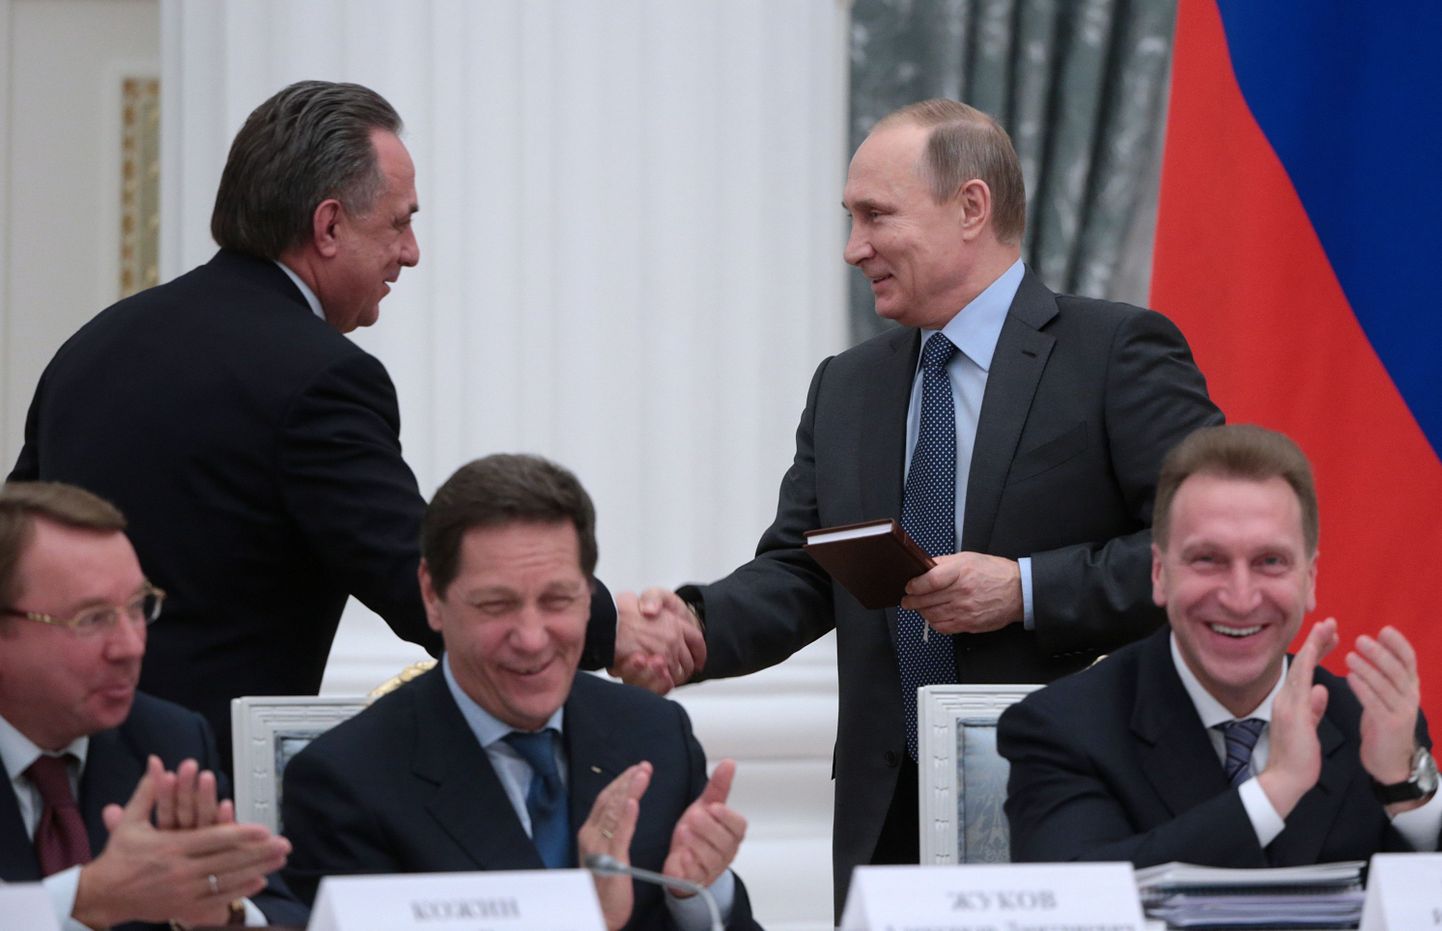 Владимир Путин (справа) поздравляет Виталия Мутко с днем рождения.